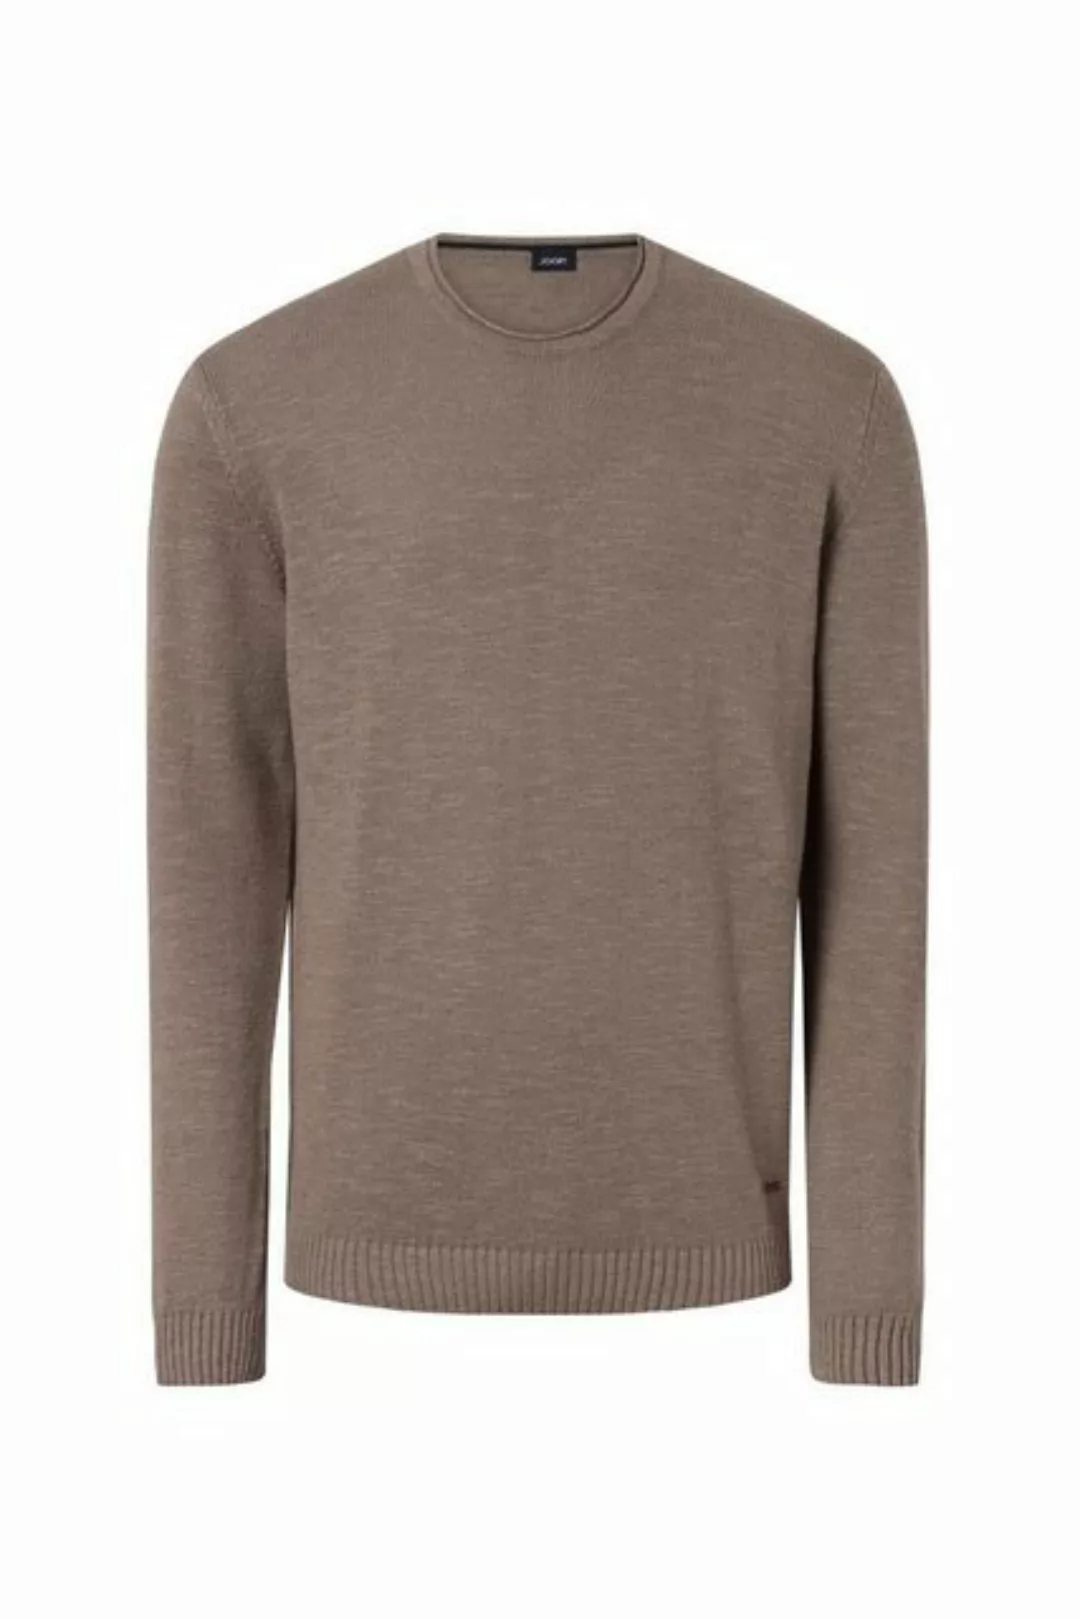 JOOP! Sweatshirt 17 JK-11Mendor 10015884 günstig online kaufen